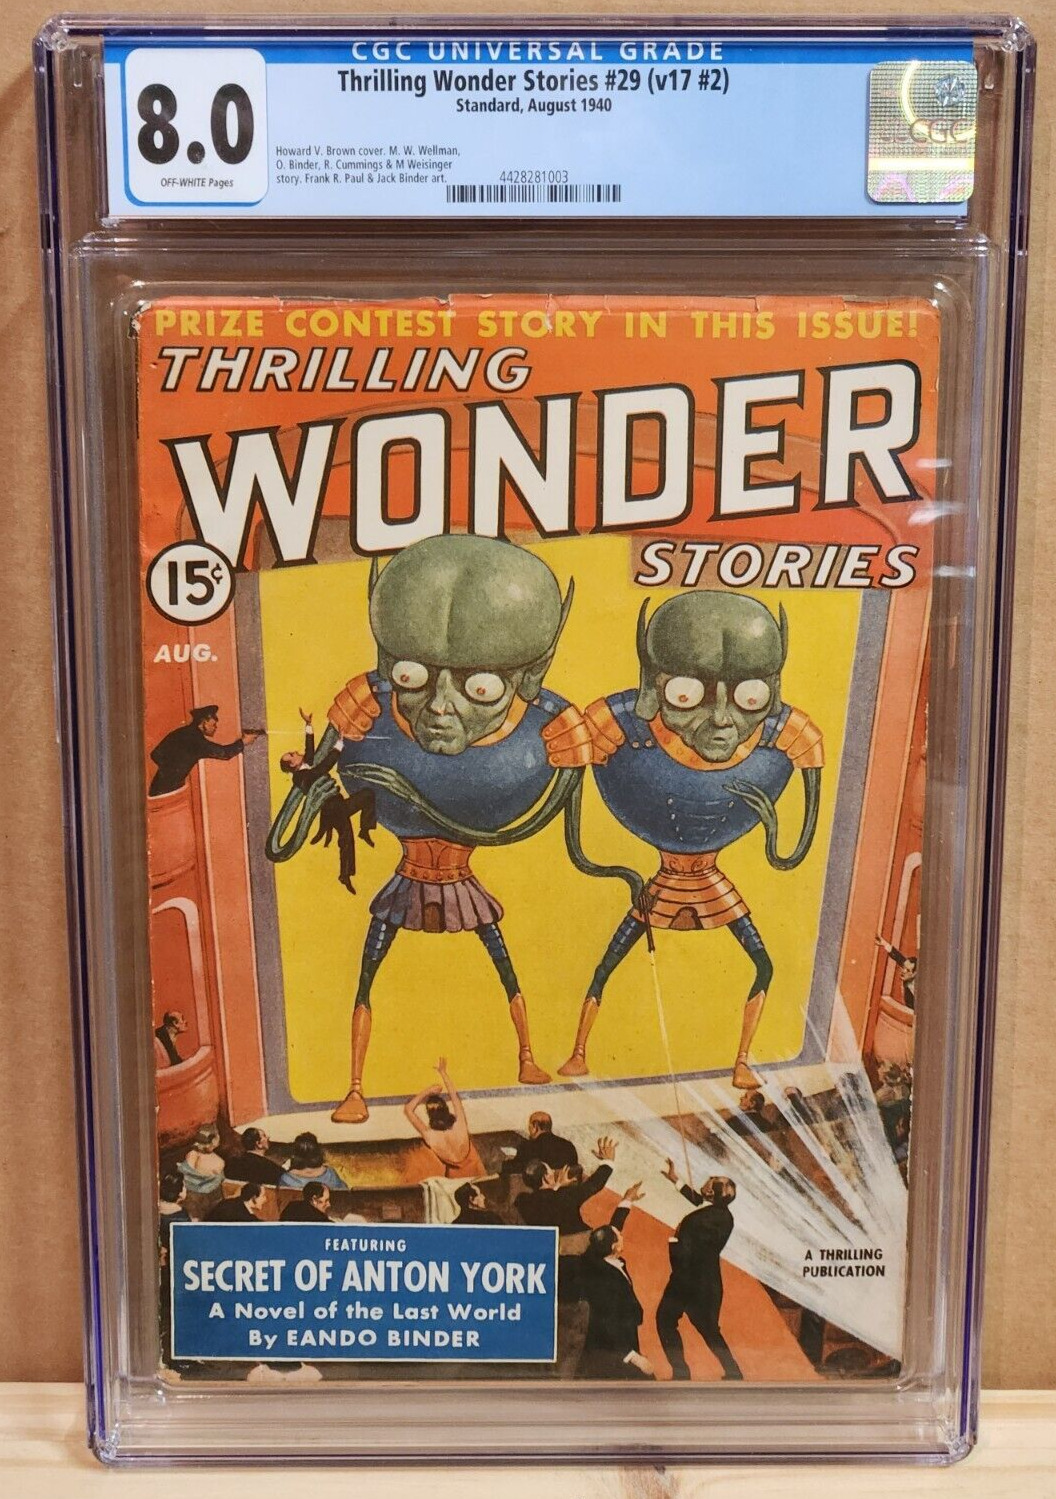 Aug 1940 Thrilling Wonder Stories #29 Pulp Vol. 17 #2 CGC 8.0